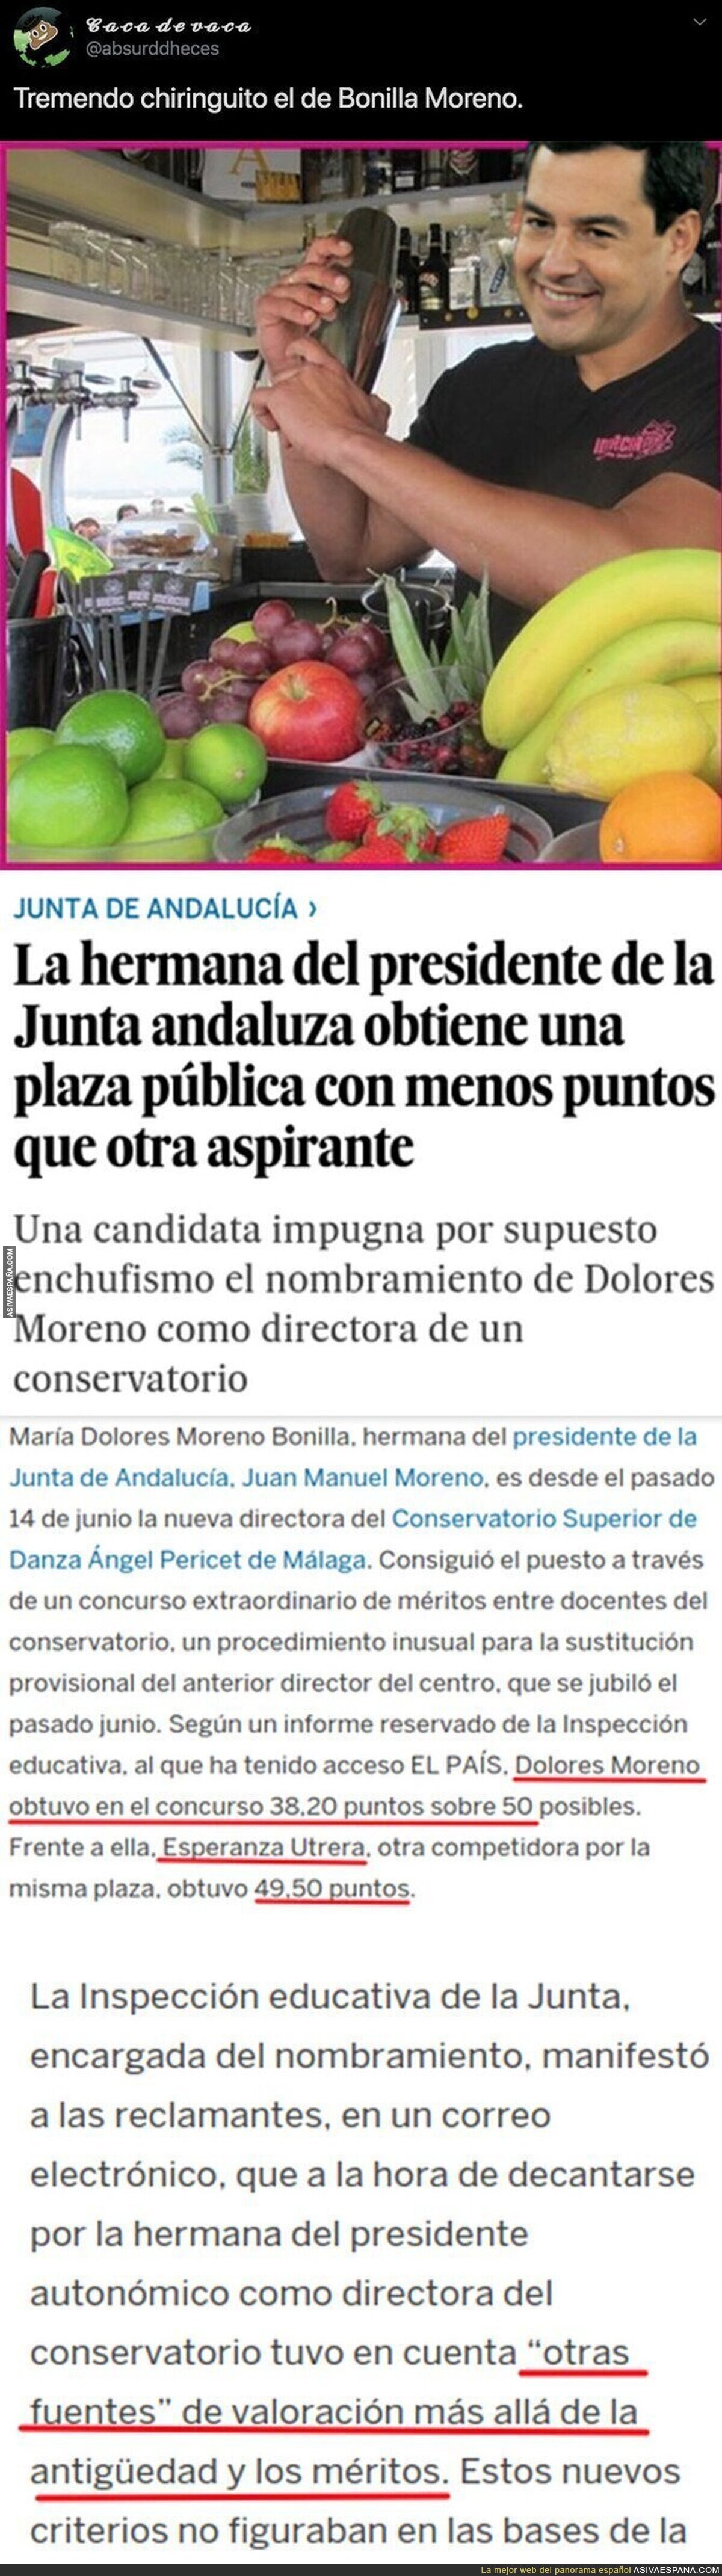 El chiringuito que se ha montado el presidente de la Junta de Andalucía